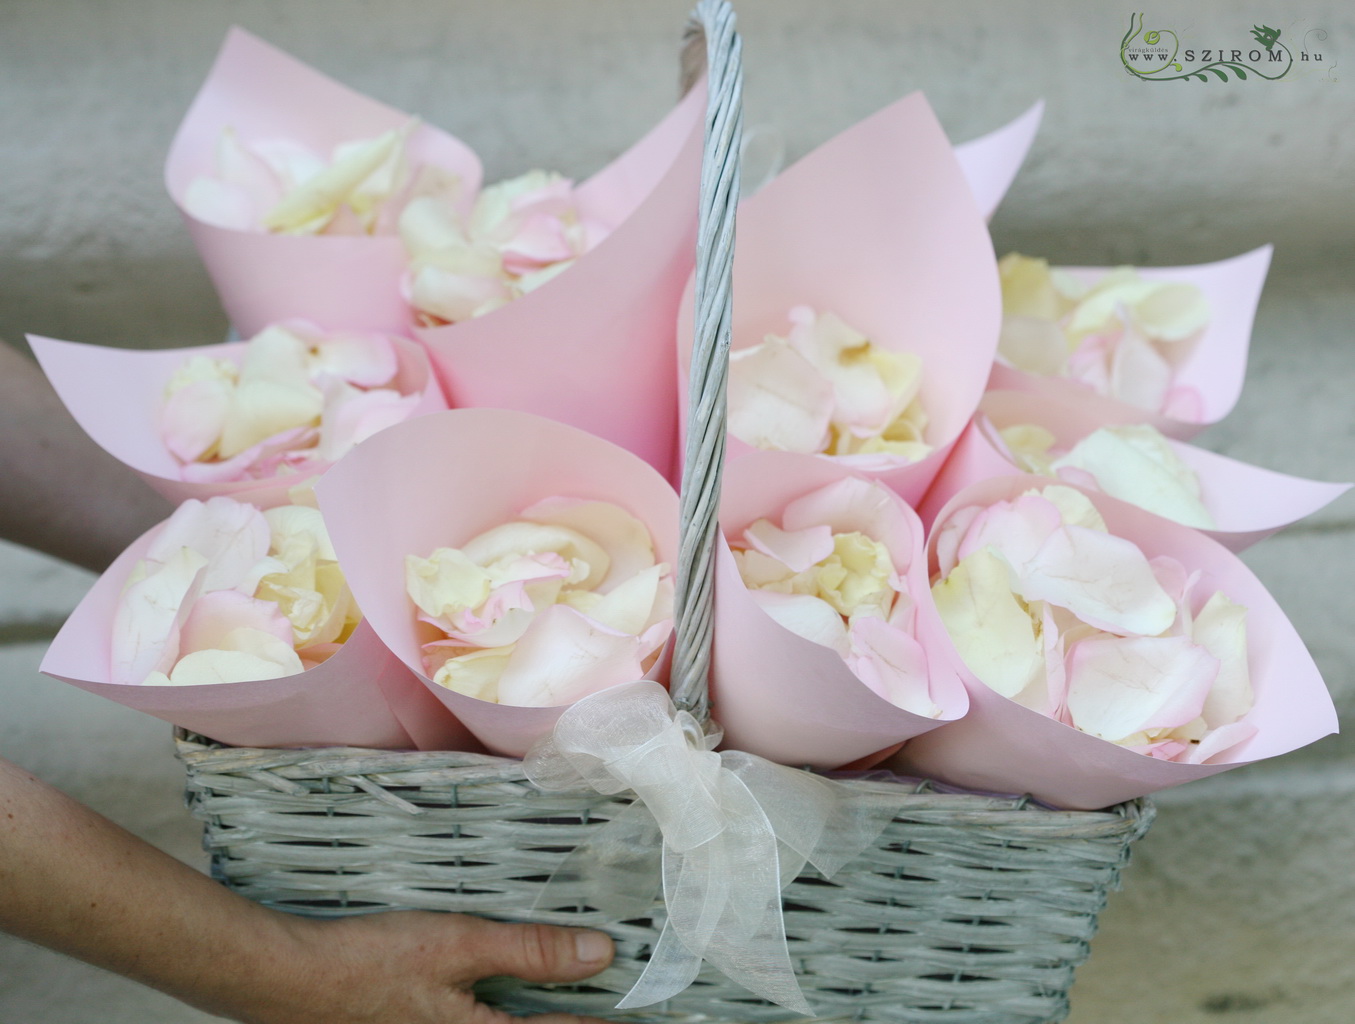 kézi papír tartók szirommal töltve szirom szóráshoz 1db (rózsaszín), esküvő